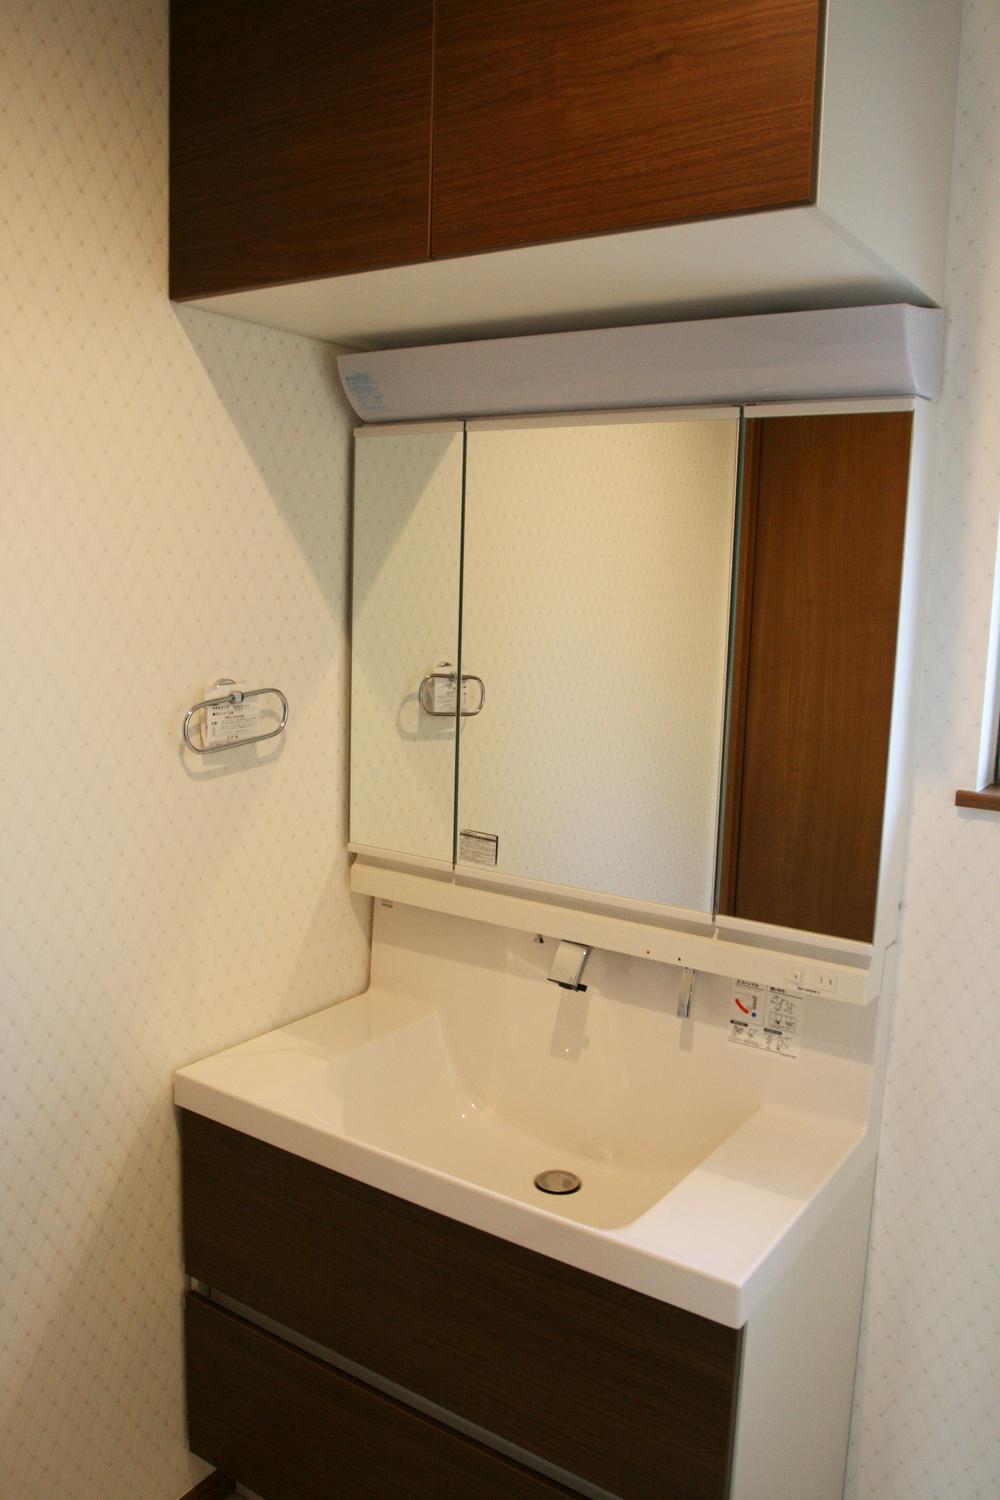 Wash basin, toilet. ● vanity can be stored: 2013 November shooting